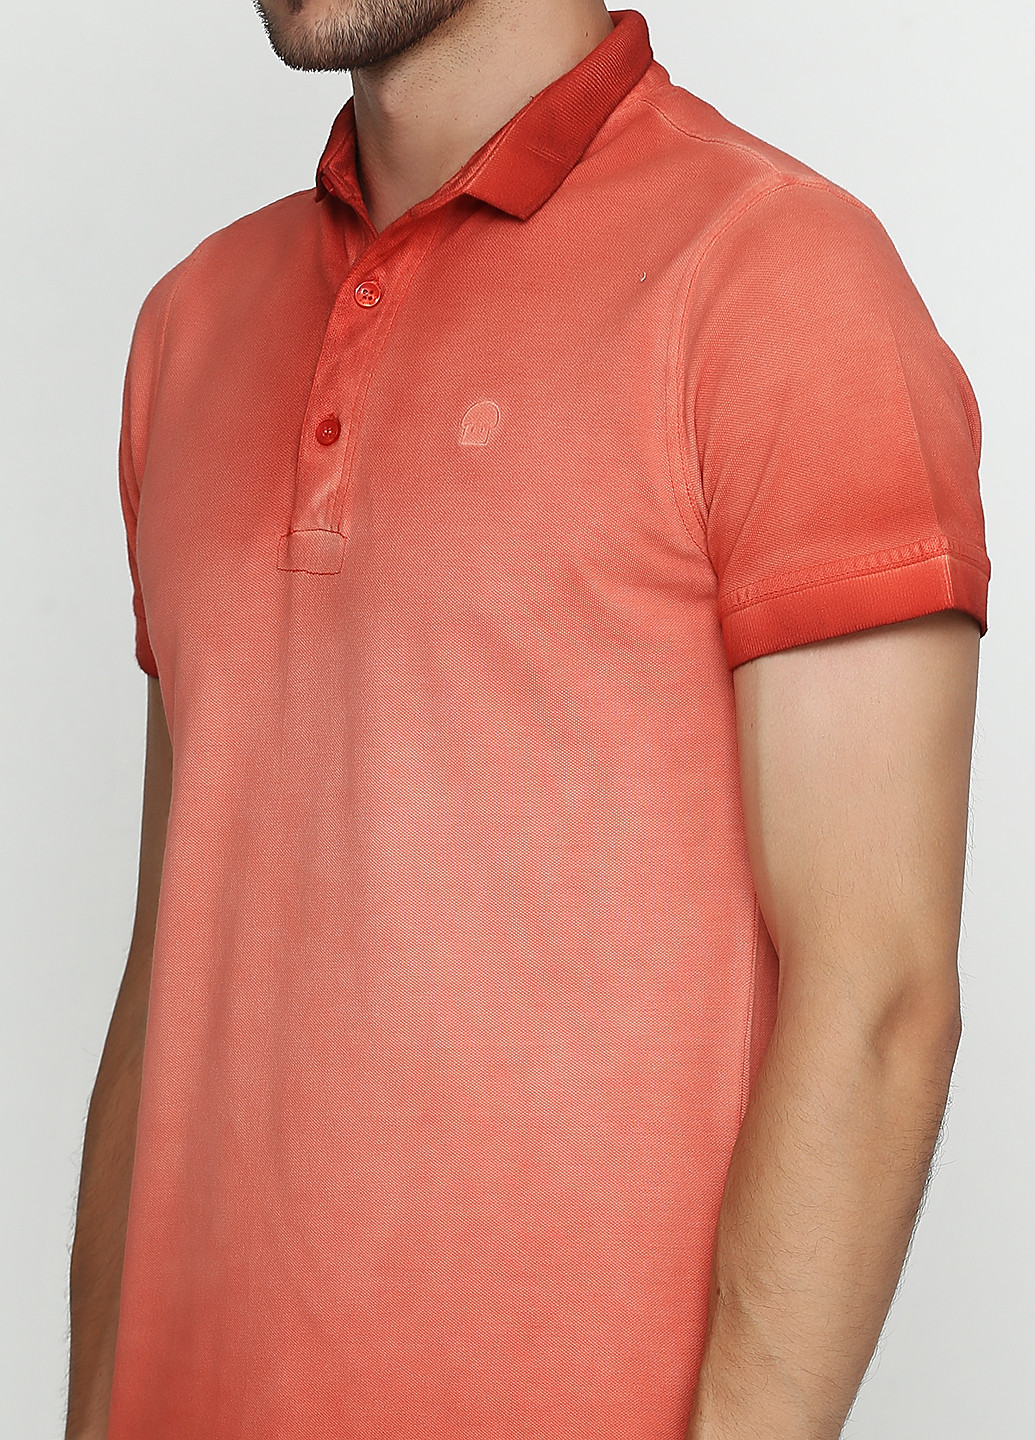 Оранжево-красная футболка-поло для мужчин De Kuba однотонная